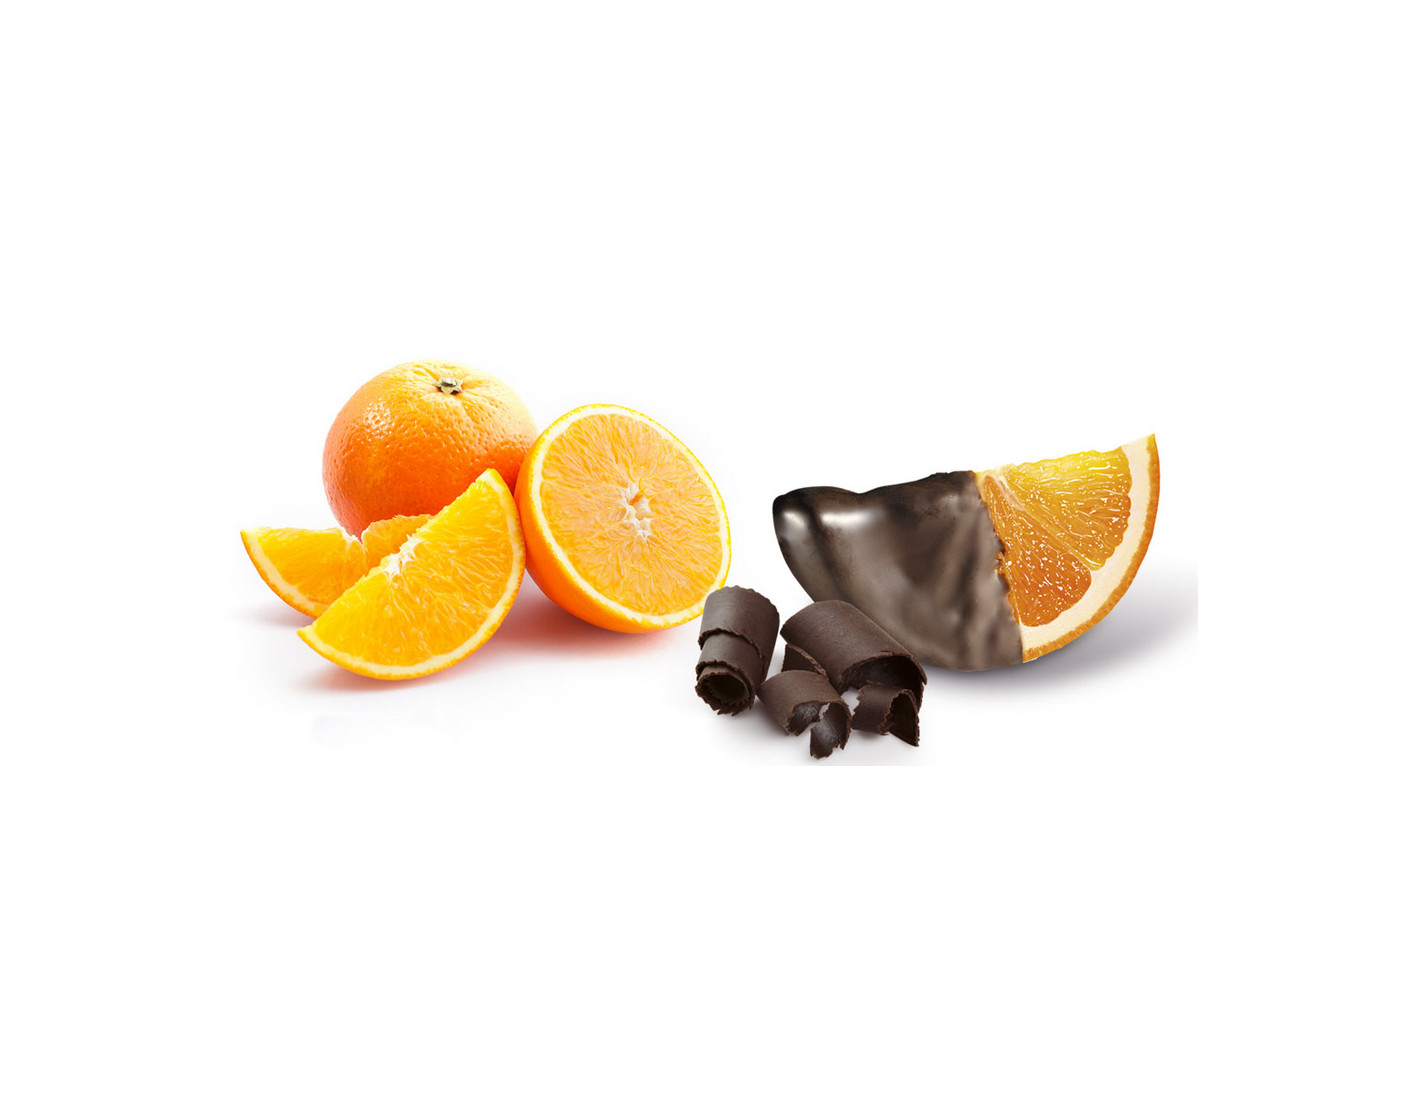 naranja con chocolate